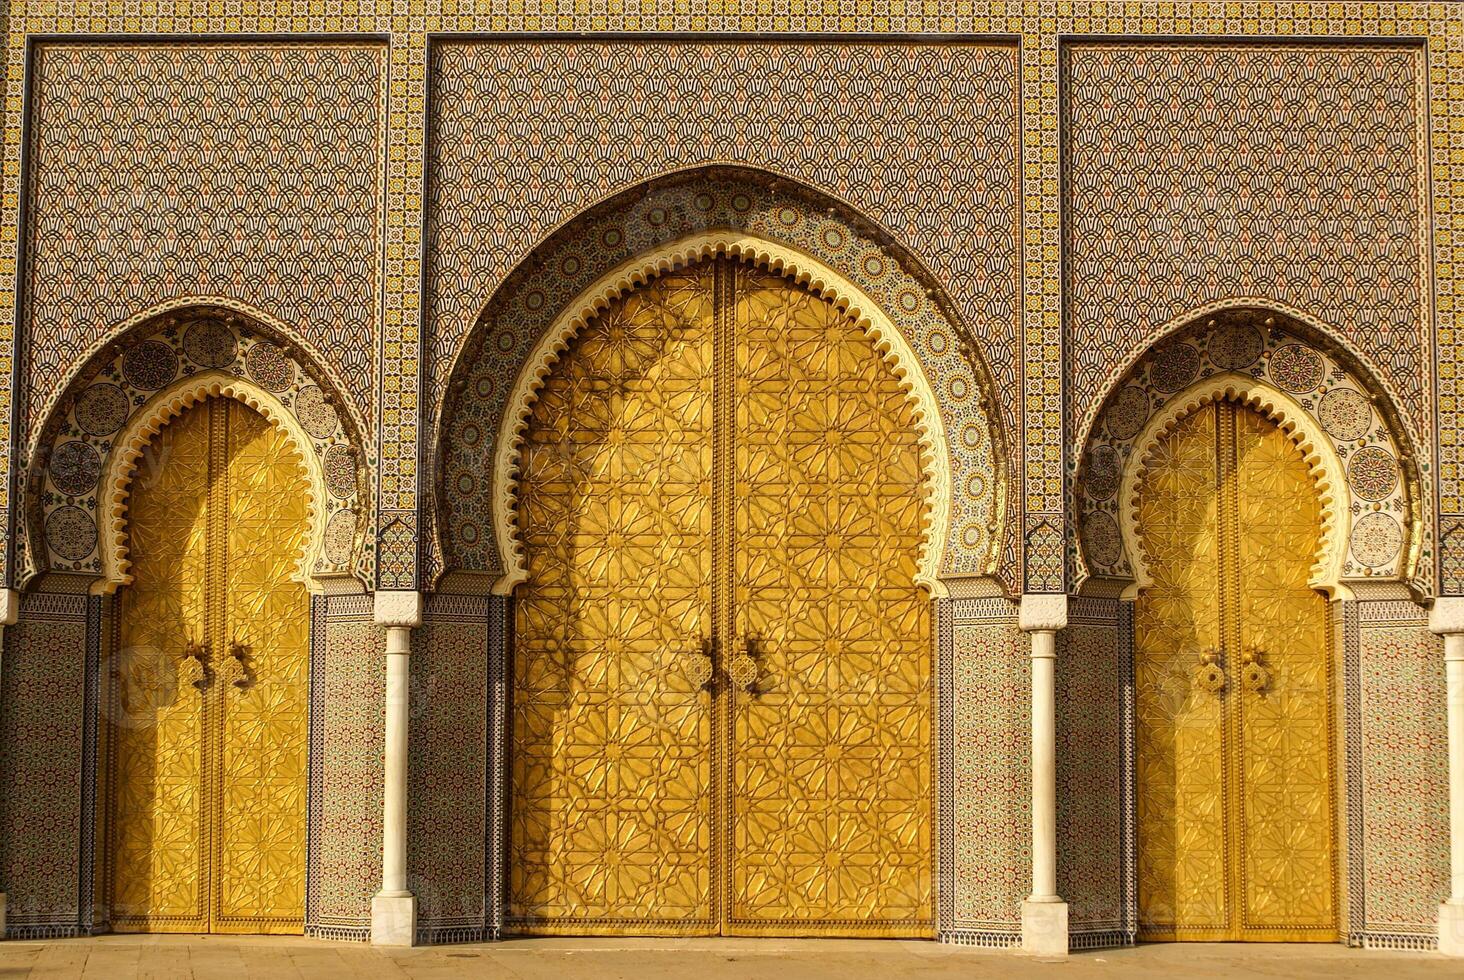 fermer de 3 fleuri laiton et tuile des portes à Royal palais dans fez, Maroc photo